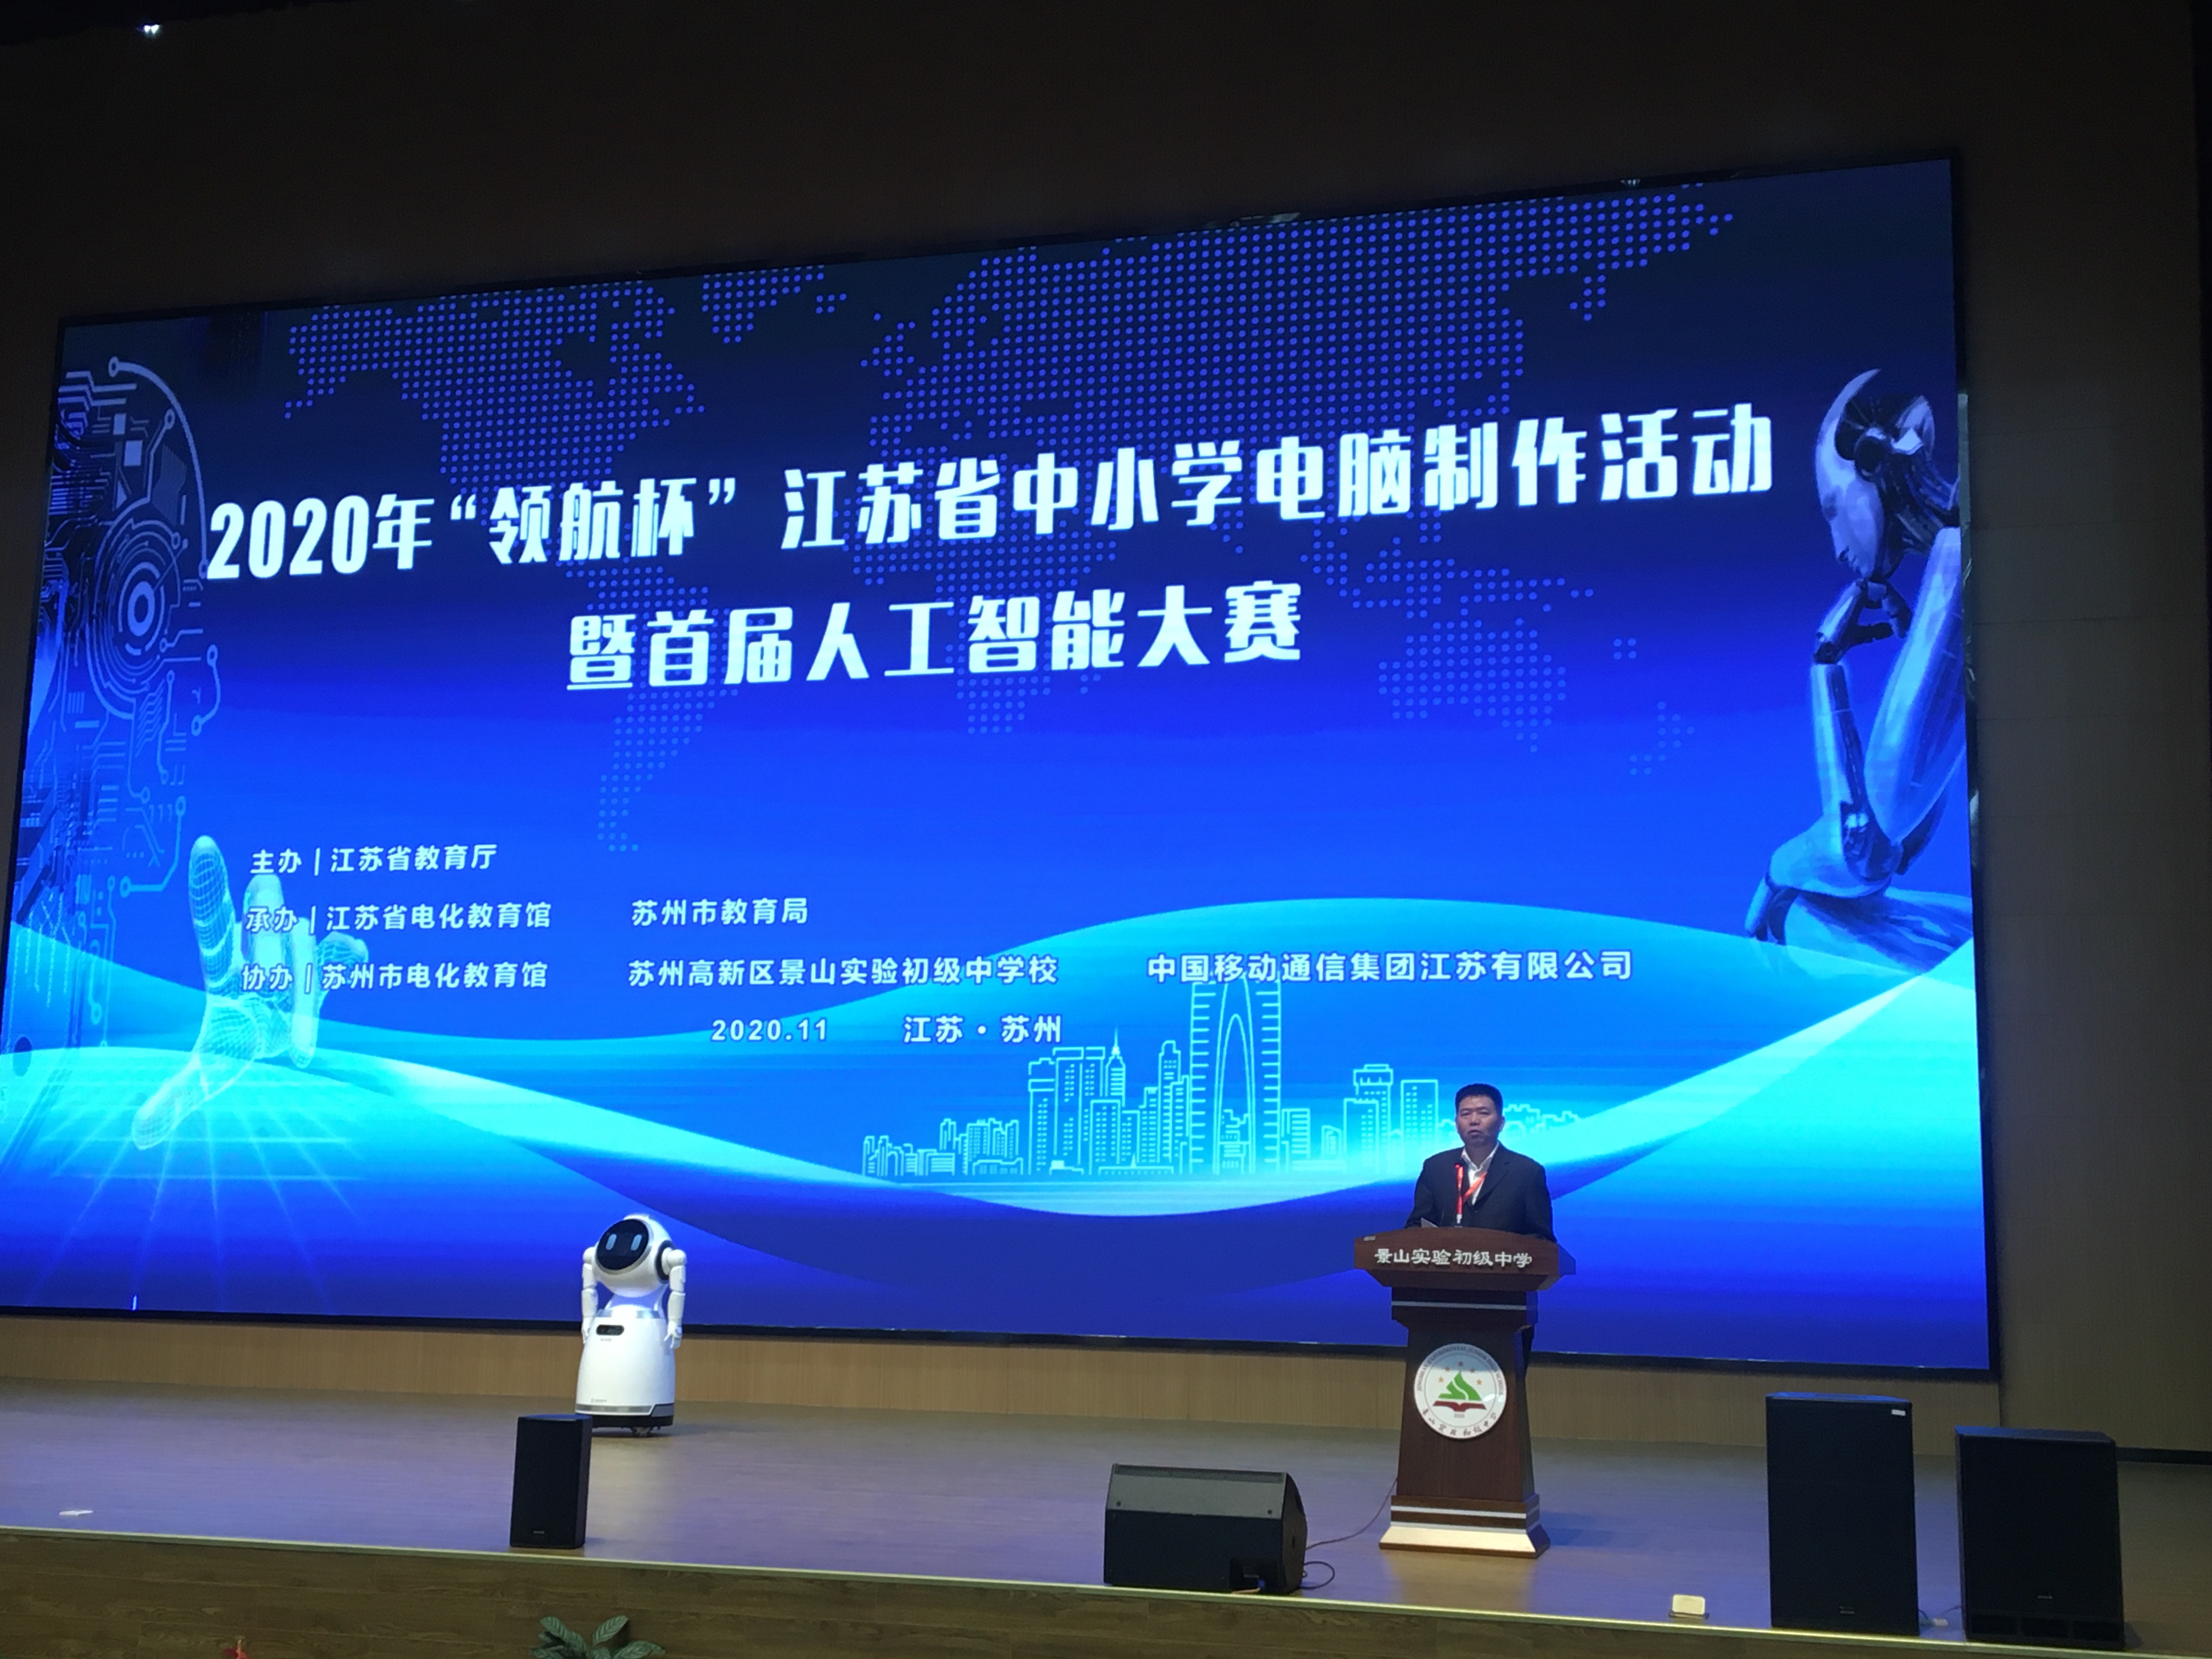 2020年“领航杯”江苏省中小学电脑制作活动暨首届人工智能大赛顺利举办